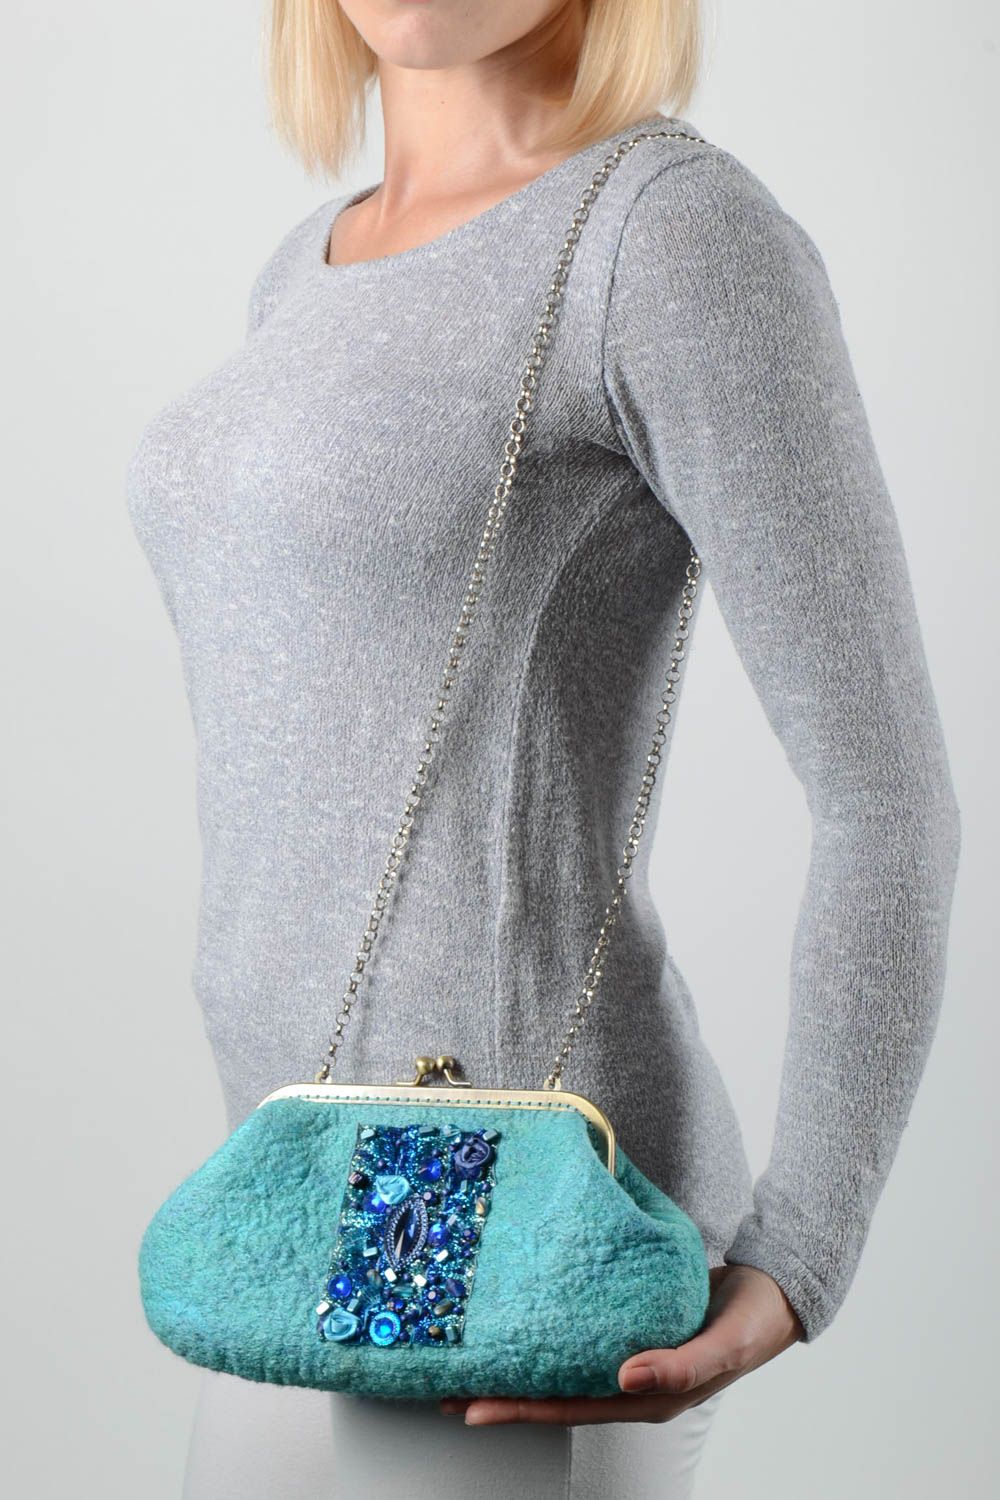 Сумка ручной работы женская сумка на цепочке через плечо из шерсти сумка валяние фото 1